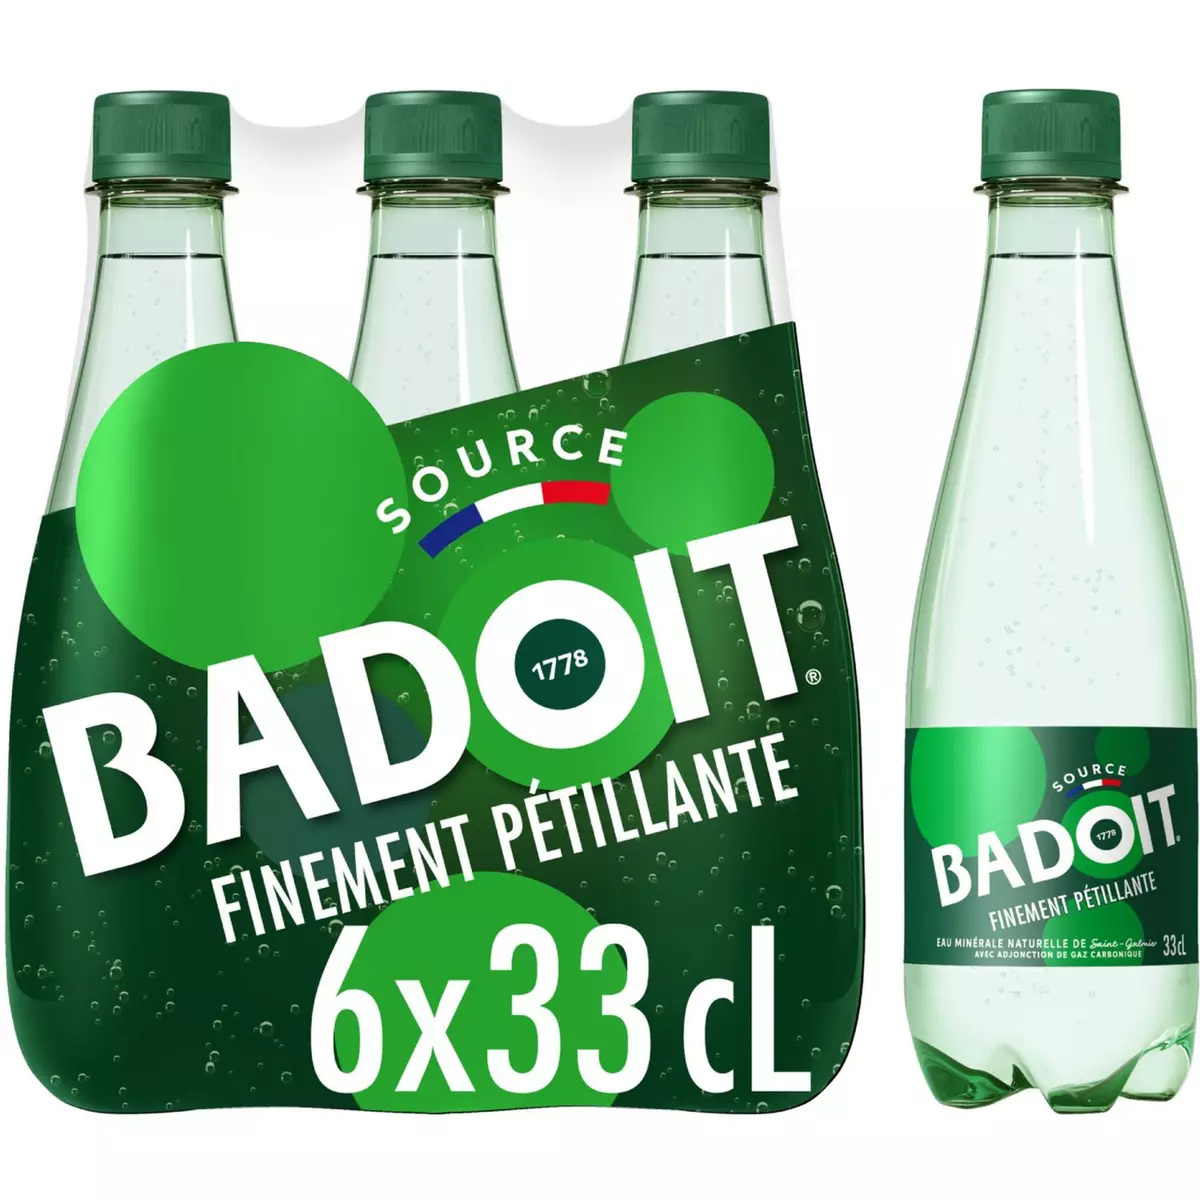 BADOIT Eau gazeuse minérale verte finement pétillante bouteilles 6x33cl 6x33cl